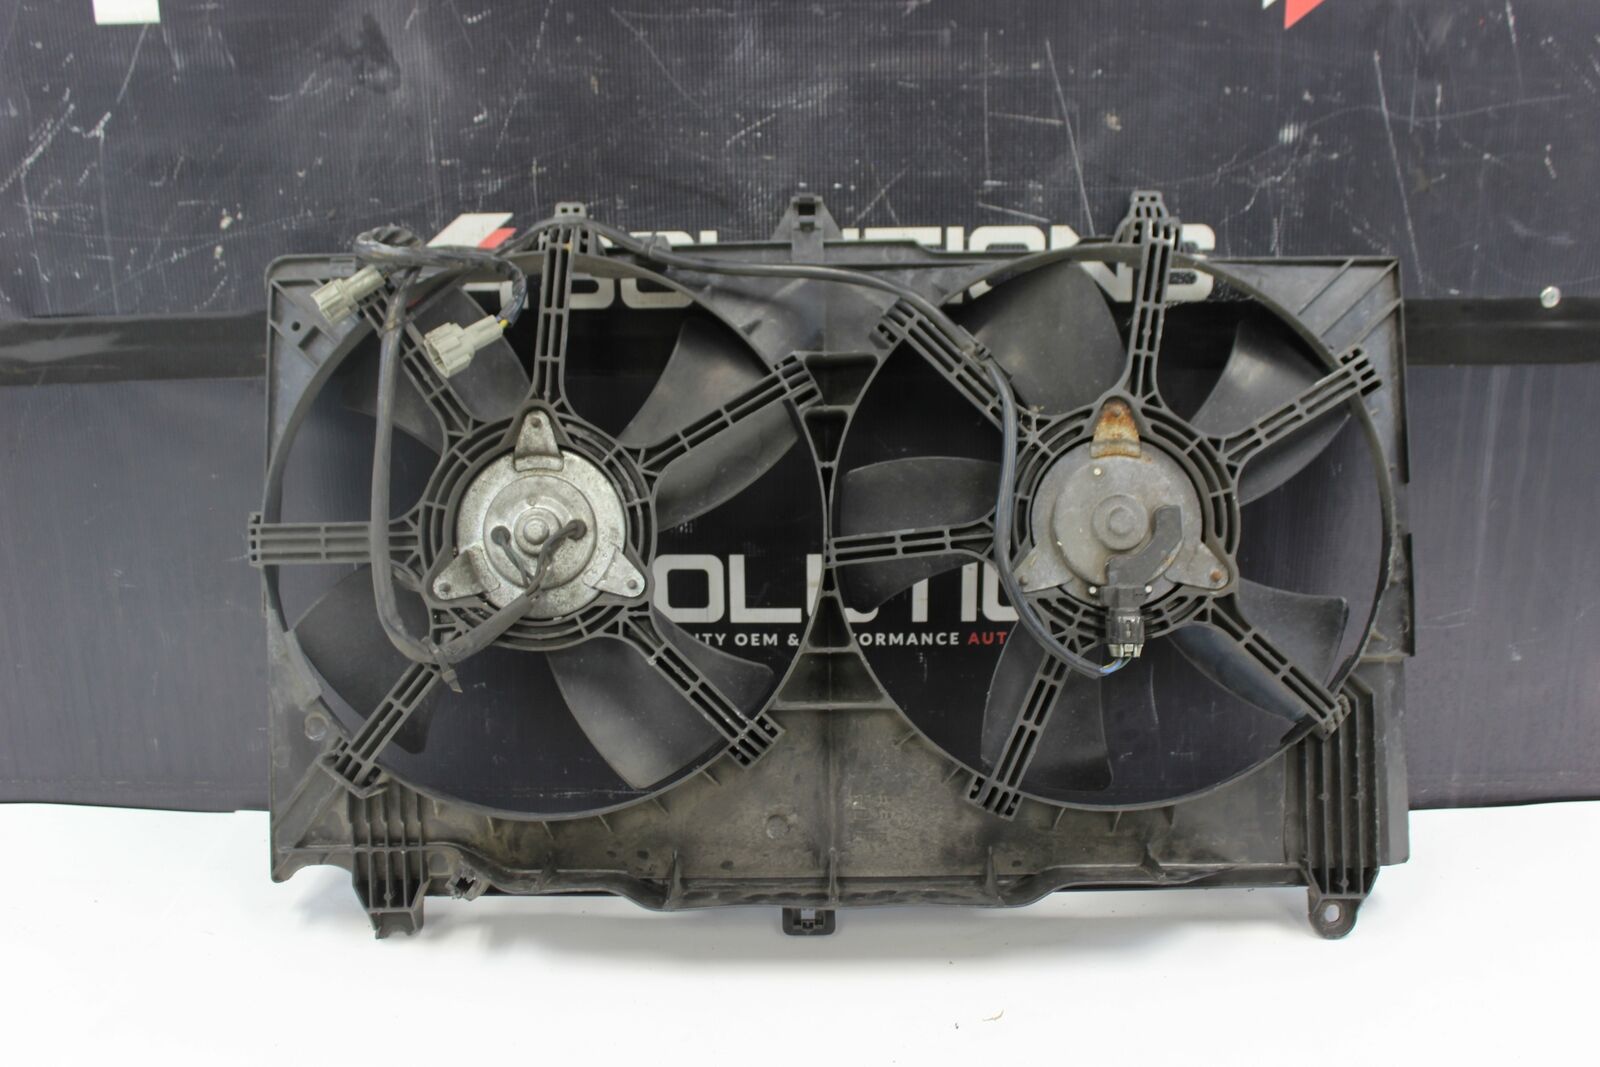 03-06 Infiniti G35/Nissan 350z Radiator Fans Fan Shroud with Motors Plugs, OEM